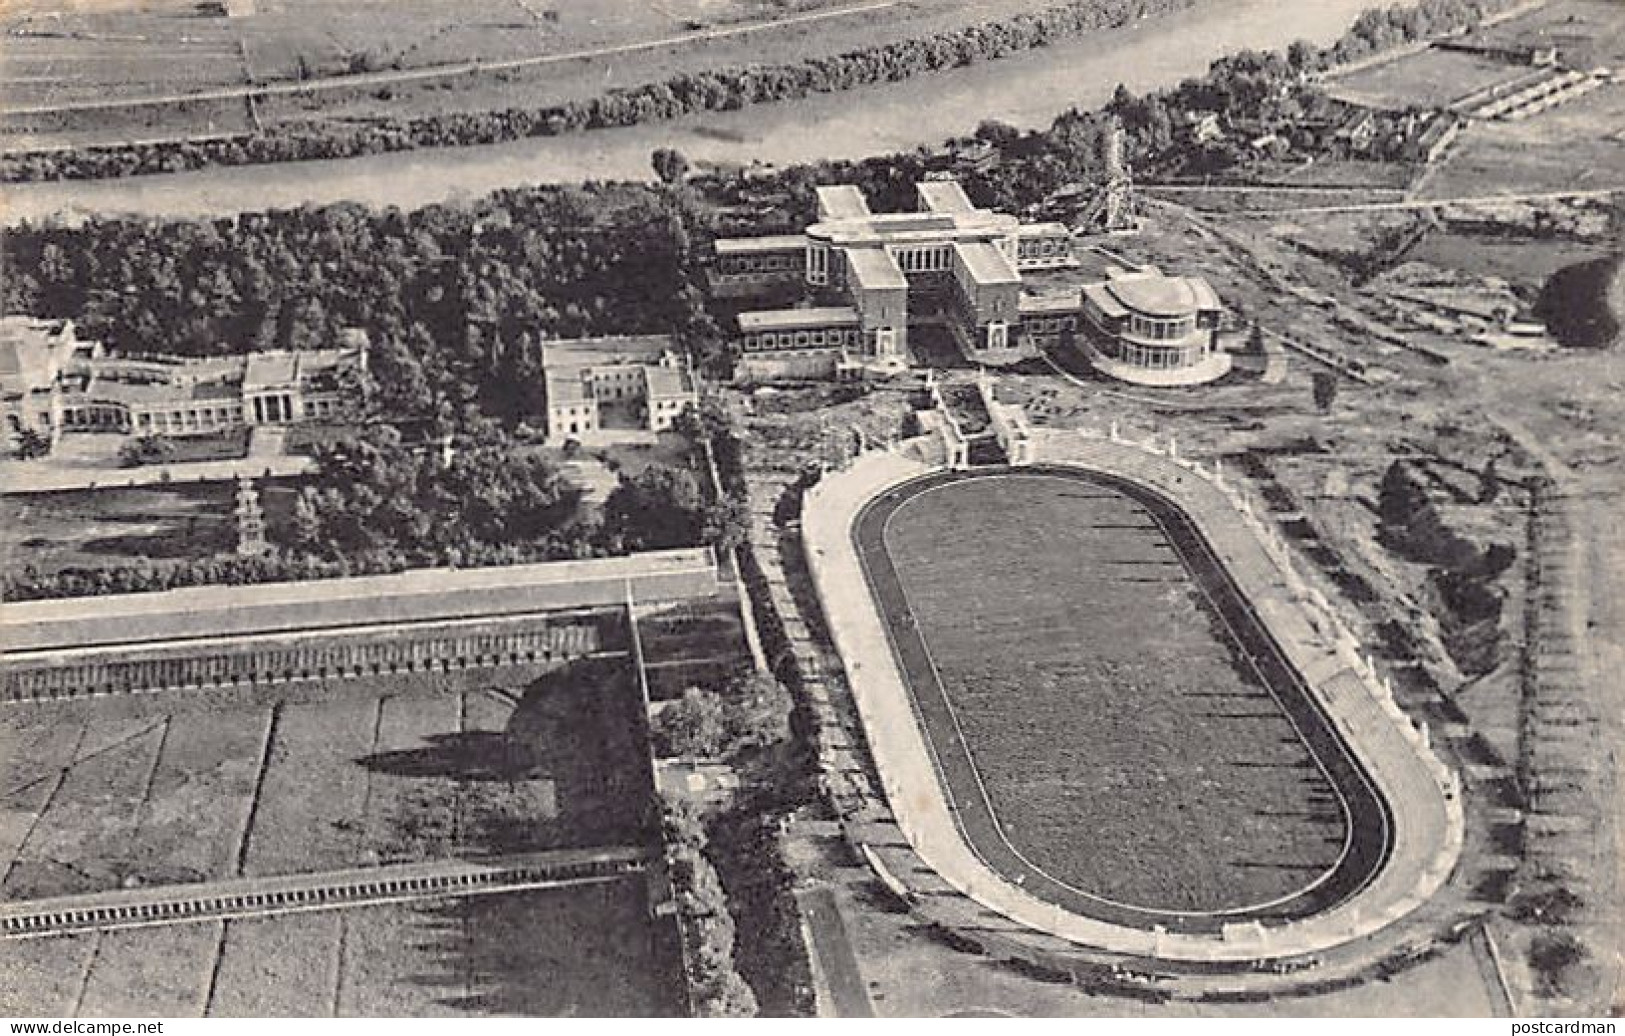 ROMA - Stadio - Stadium - Stade - Foro Mussolini - Vista Aerea - Estadios E Instalaciones Deportivas